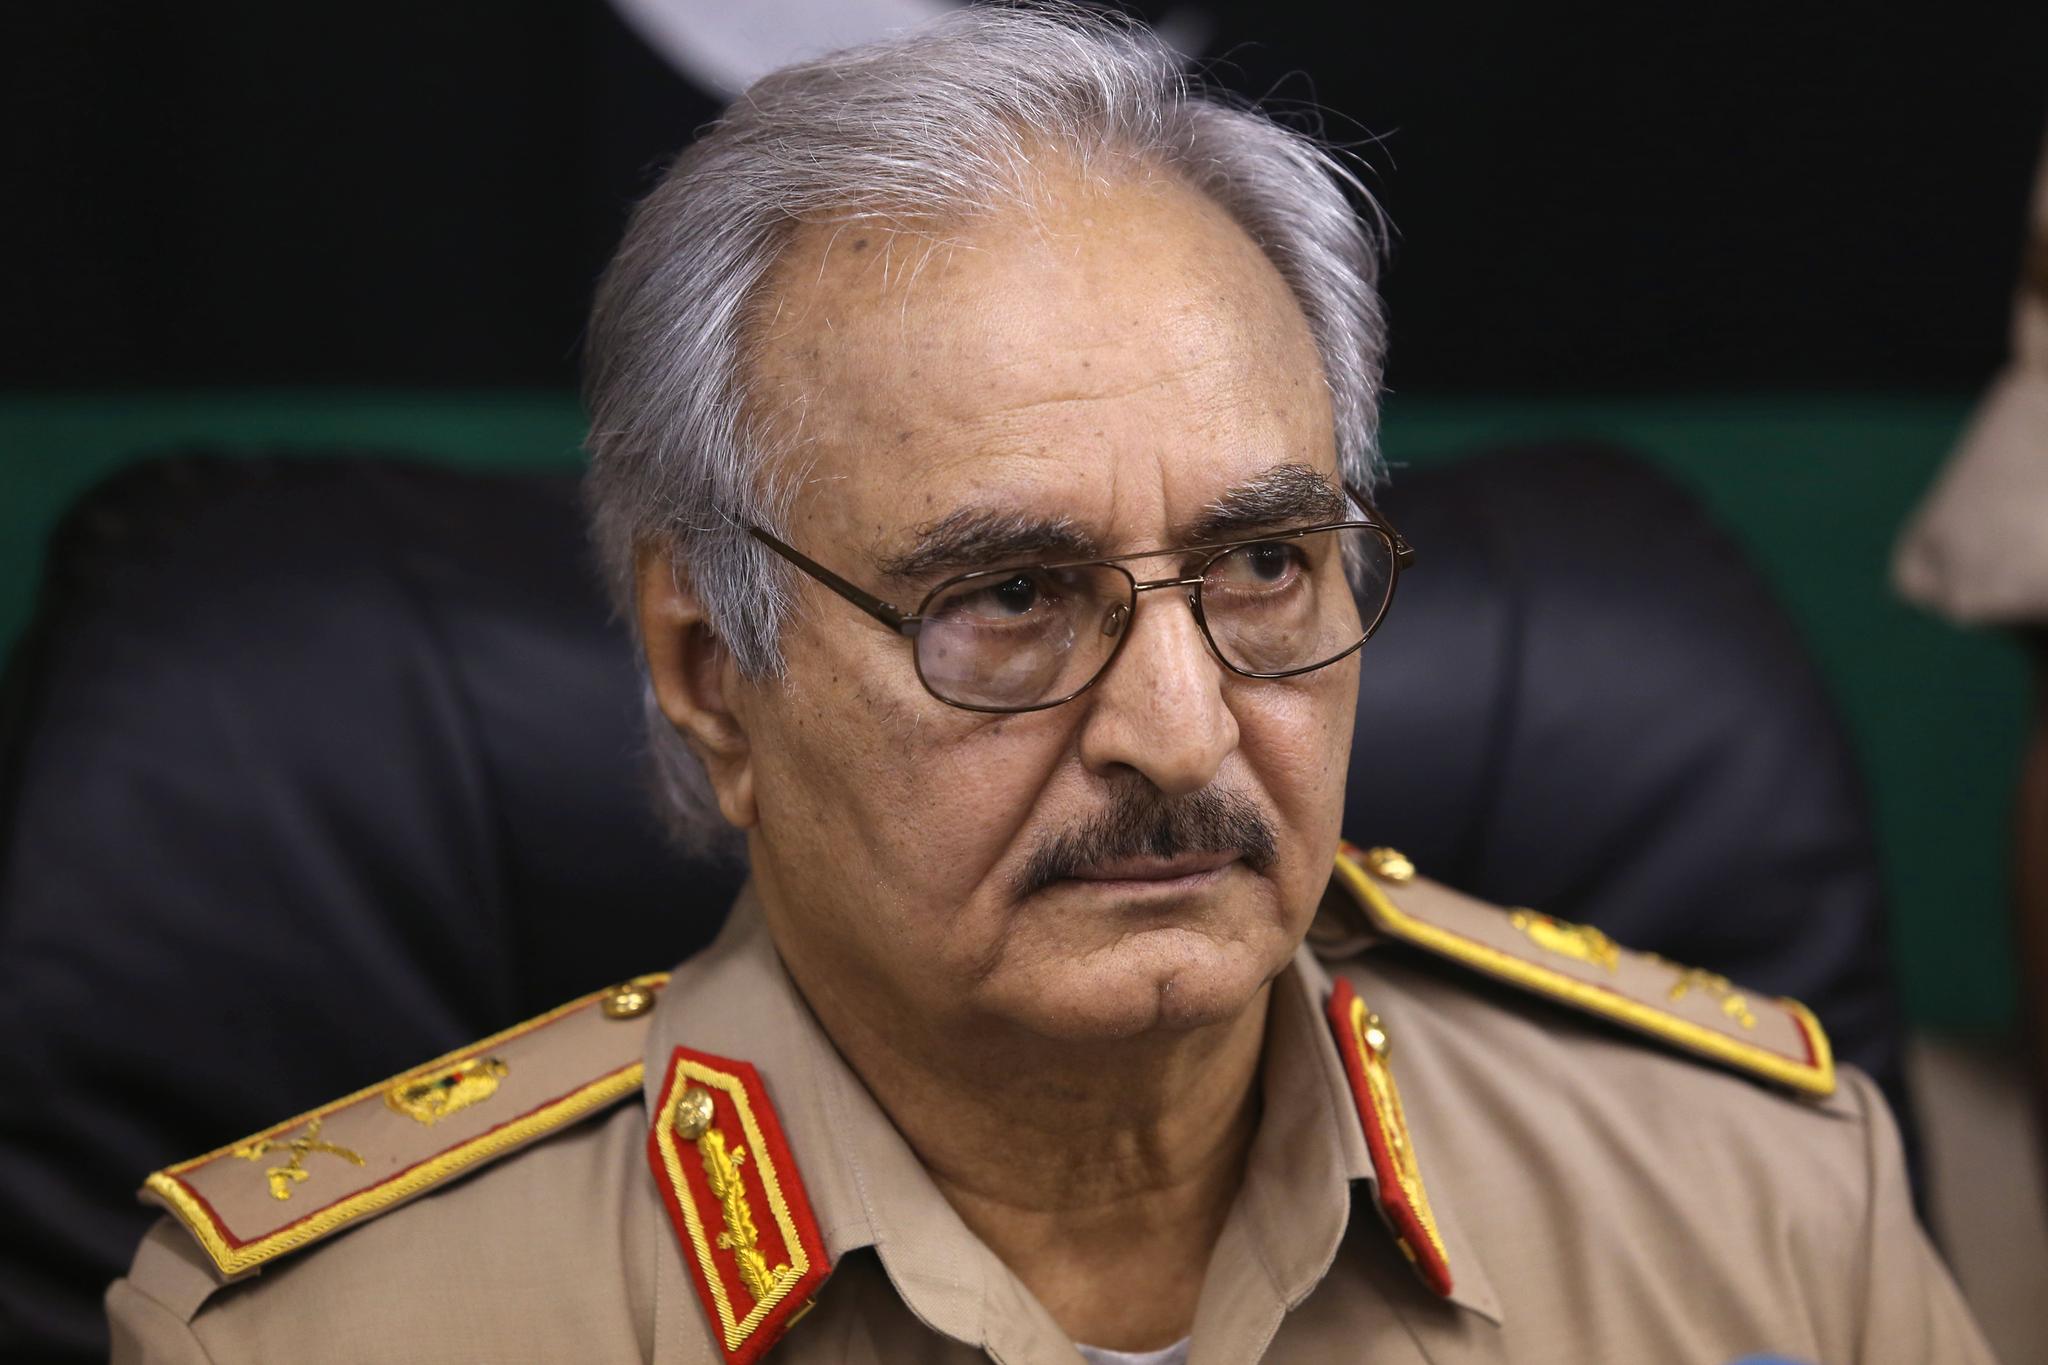 Den mektige østlibyske krigsherren Khalifa Haftar startet offensiven mot den FN-støttede regjeringen i Tripoli den 4. april.